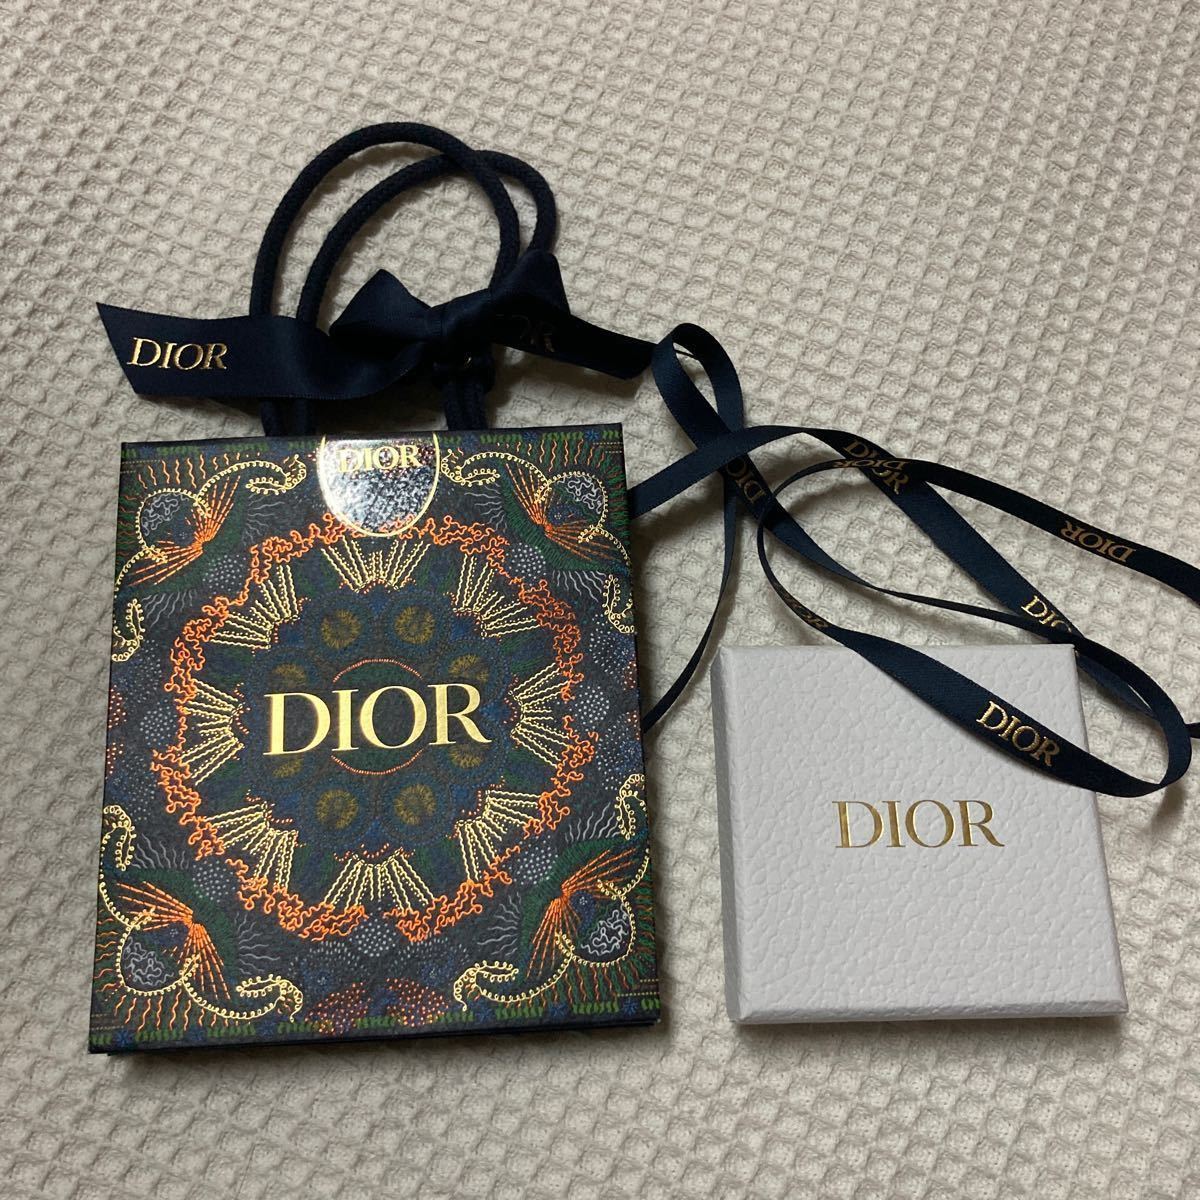 ディオール 紙袋 空箱 2020 クリスマス限定 リボン アクセサリー ボックス Dior クリスマス 限定 ケース ショップ袋 ショッパー